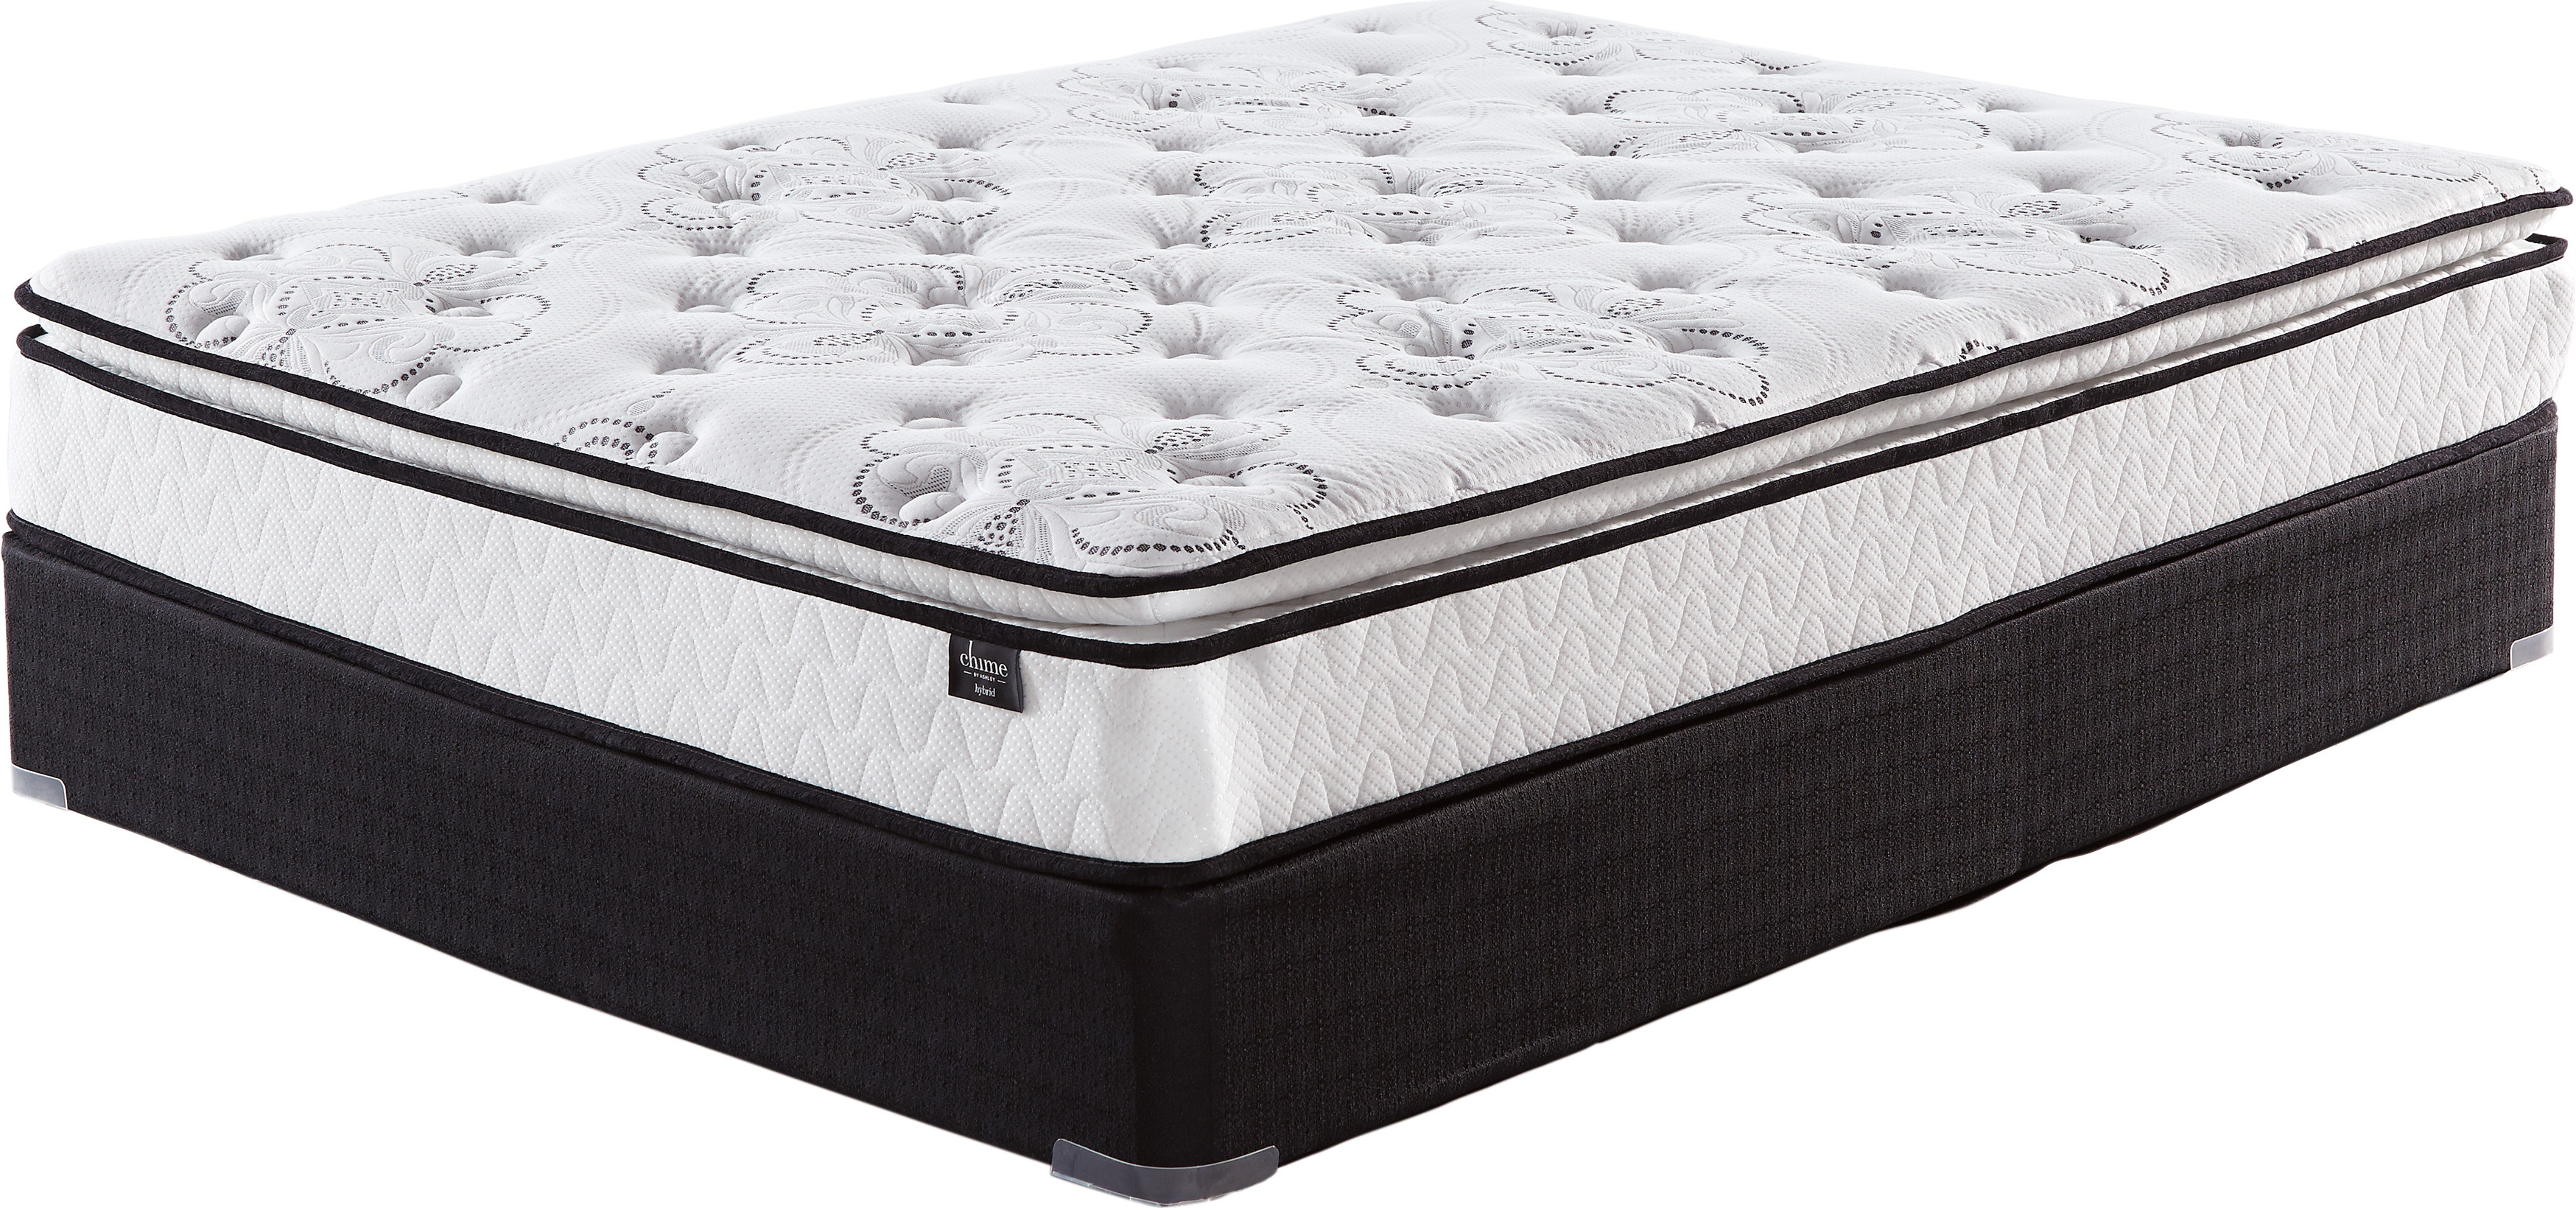 10 inch bonnell pillow top queen mattress